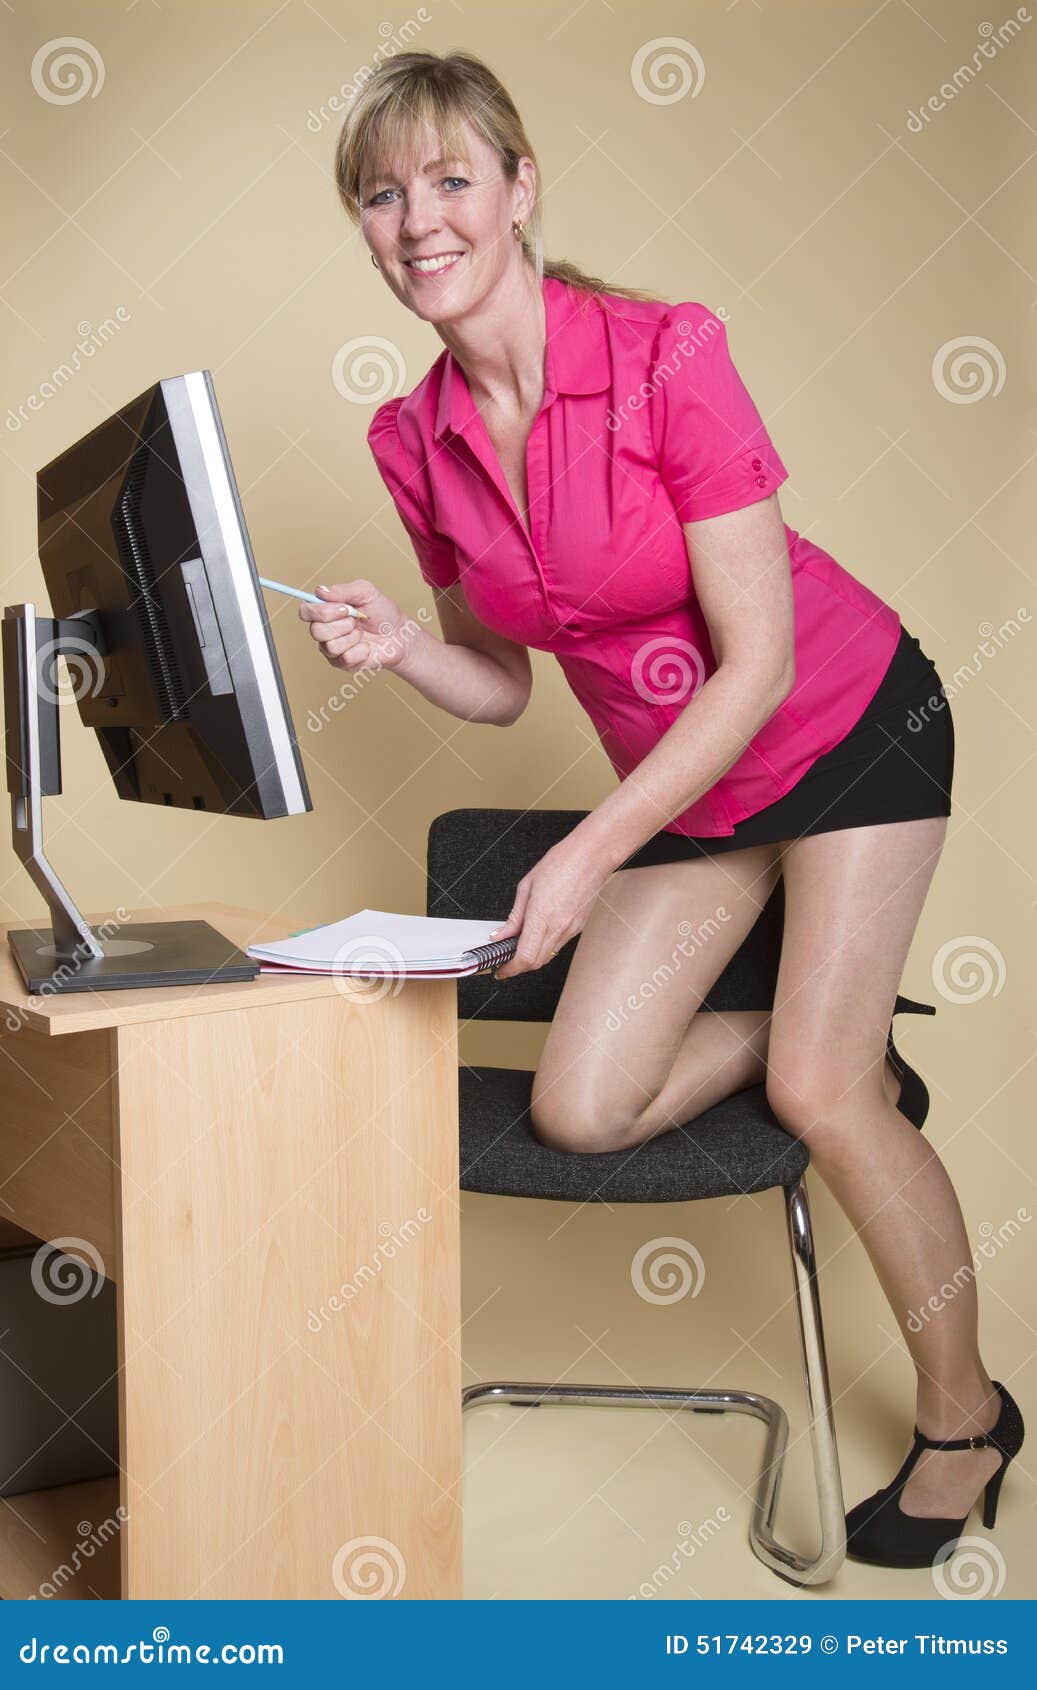 Leggy Secretary At Her Desk Stock Image Image Of Leggy Female 51742329